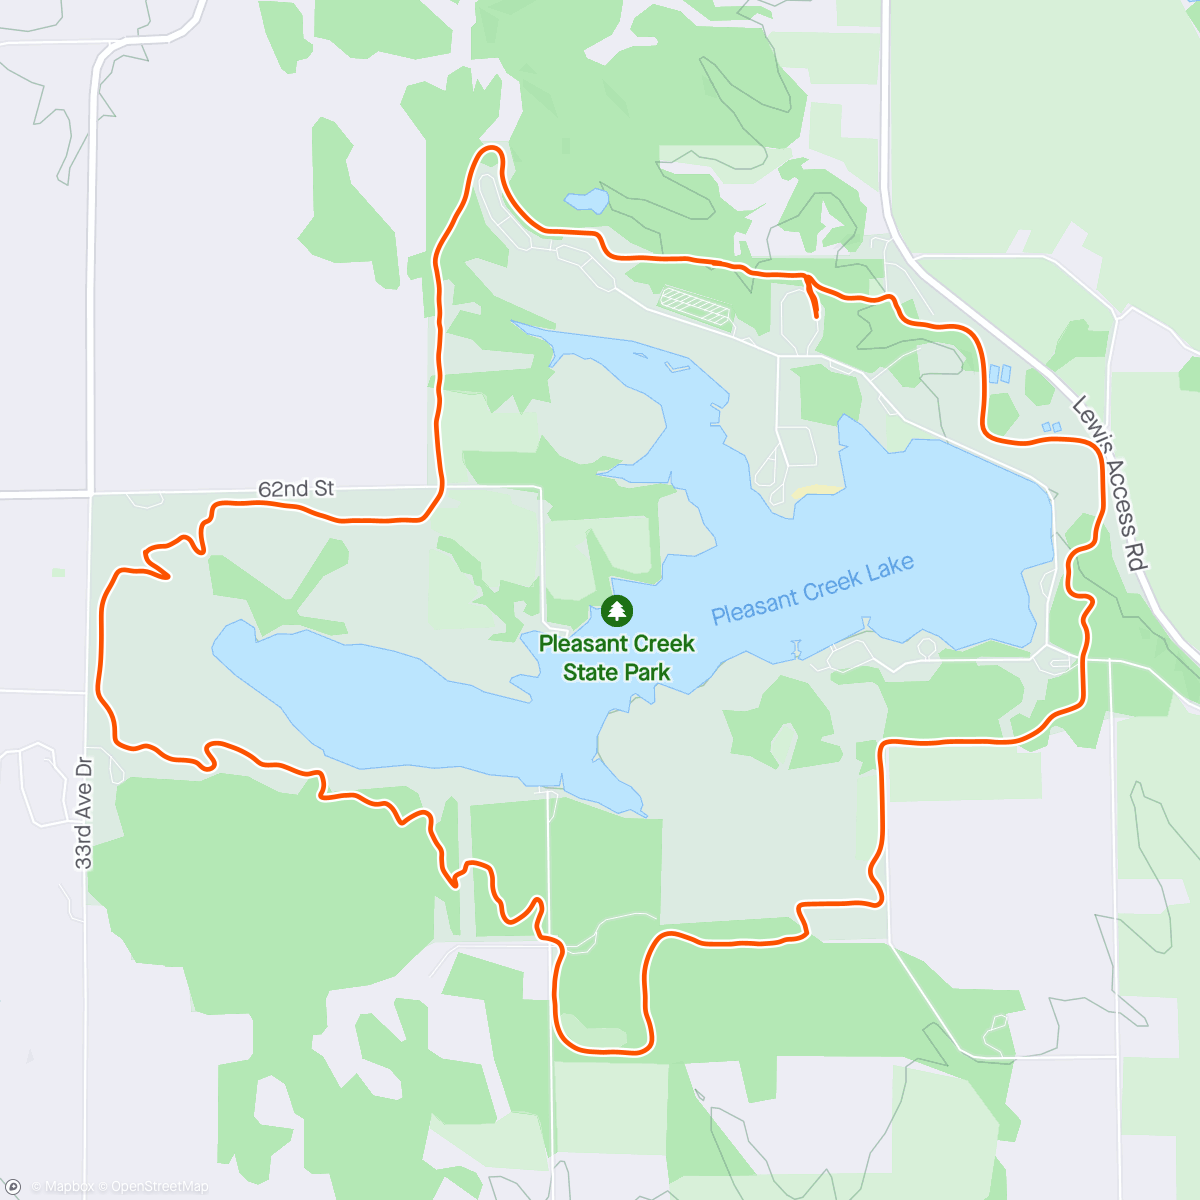 アクティビティ「Pleasant Creek State Park run/walk/hike」の地図